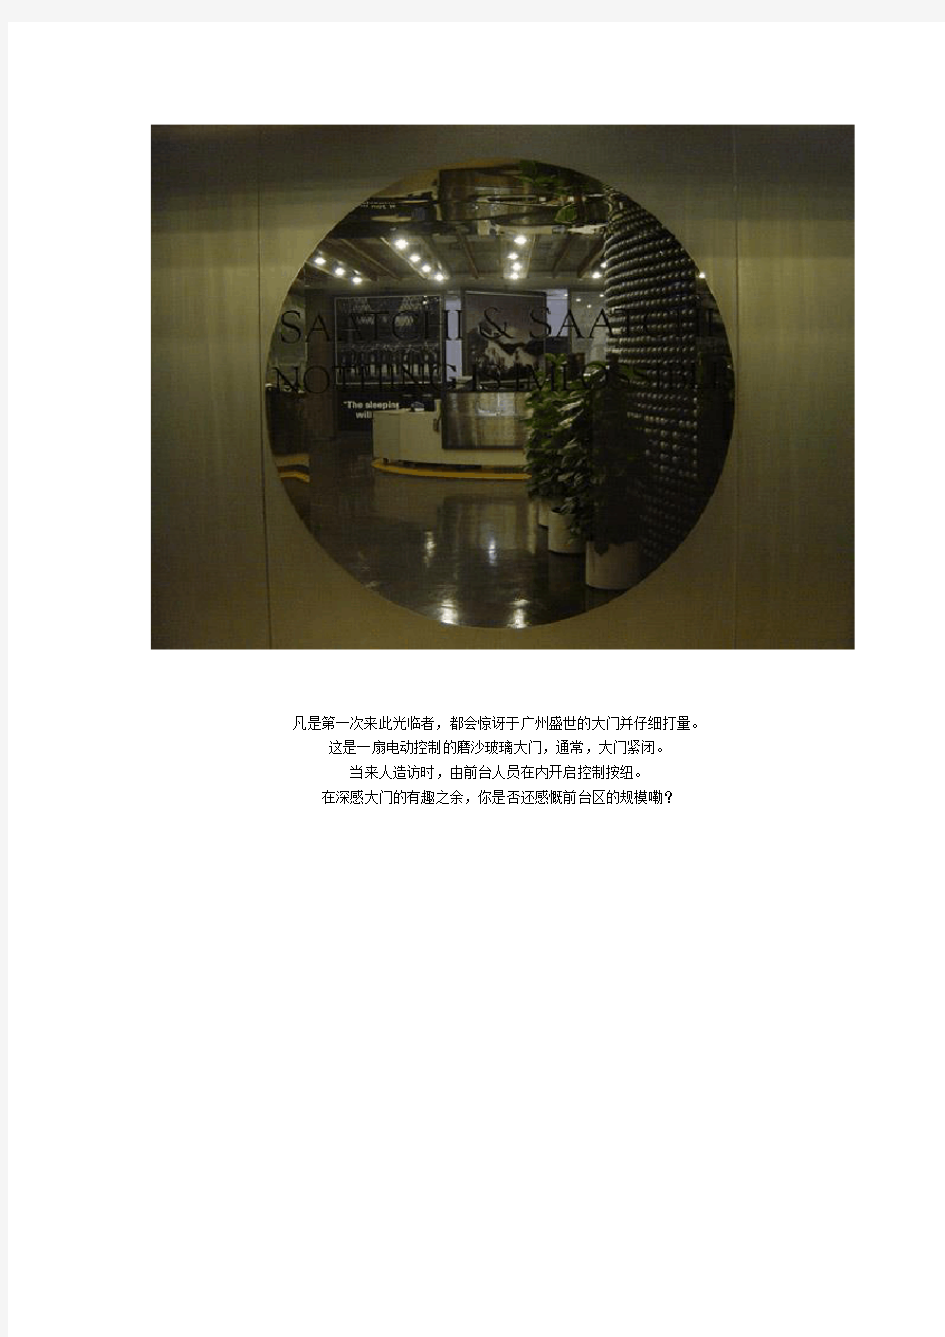 (广告传媒)走进广州盛世长城广告公司